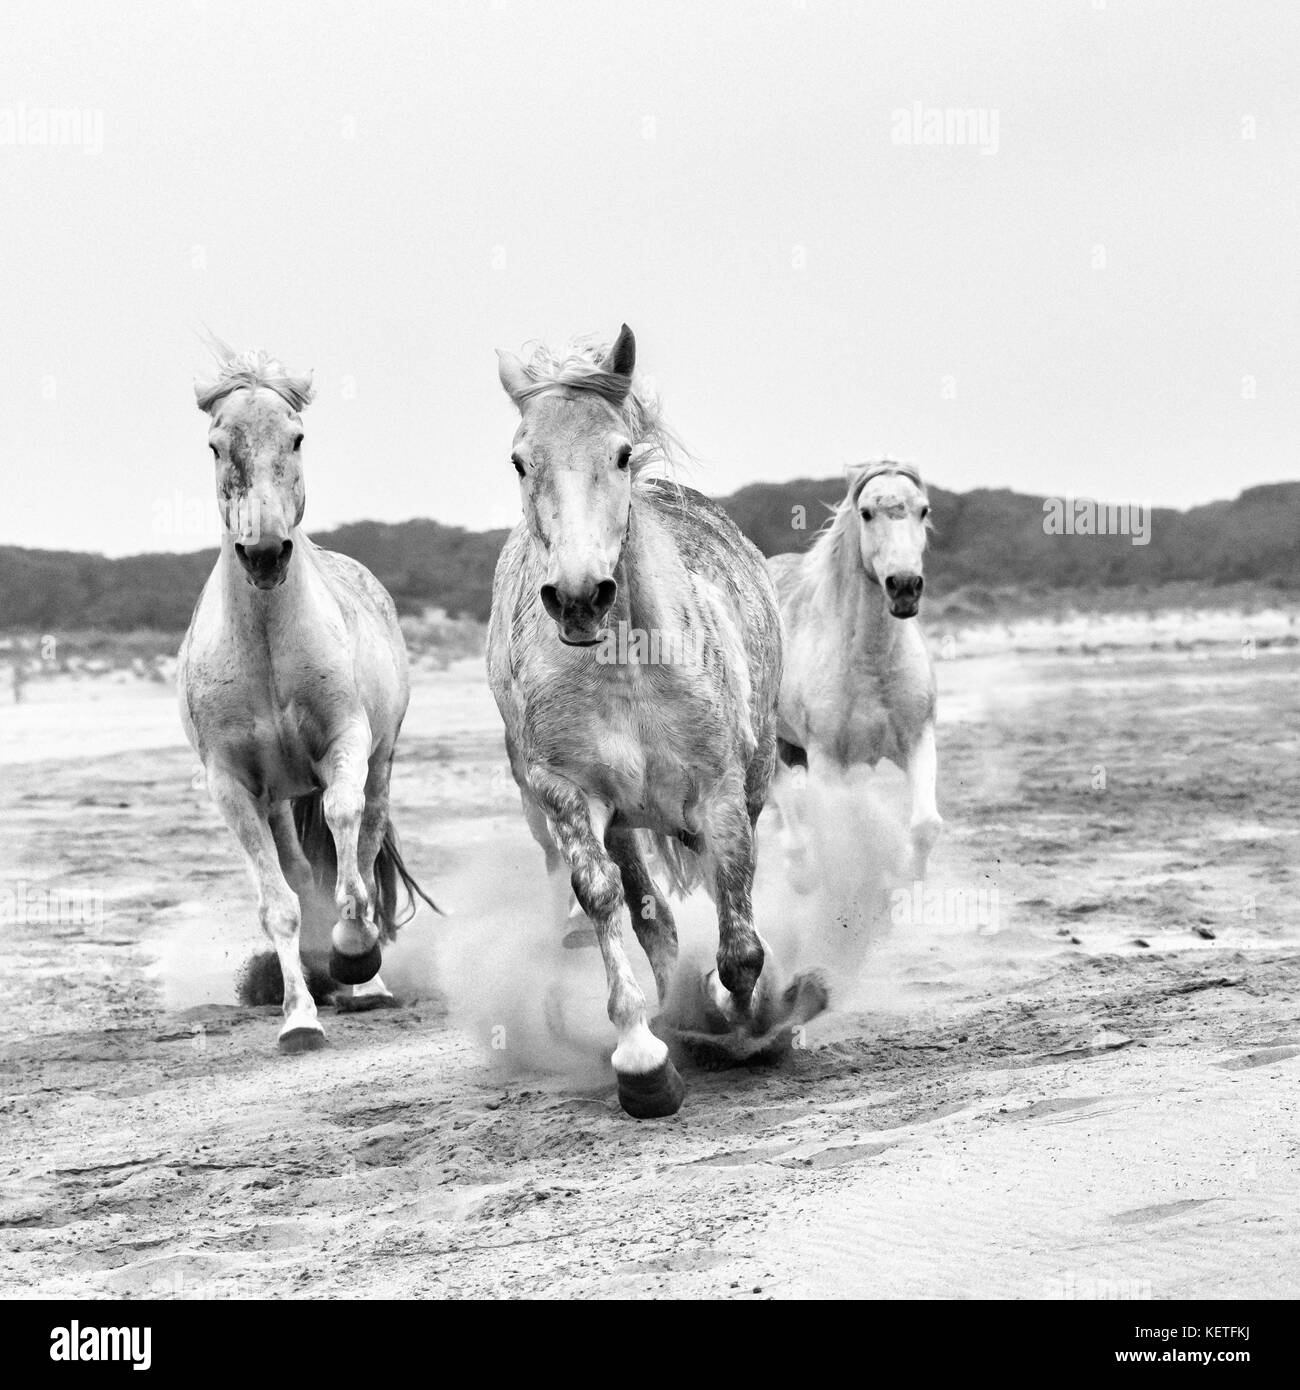 Chevaux Camargue (Equus caballus), gallopping dans de l'eau près de Saintes Maries-de-la-Mer, Camargue, France, Europe Banque D'Images